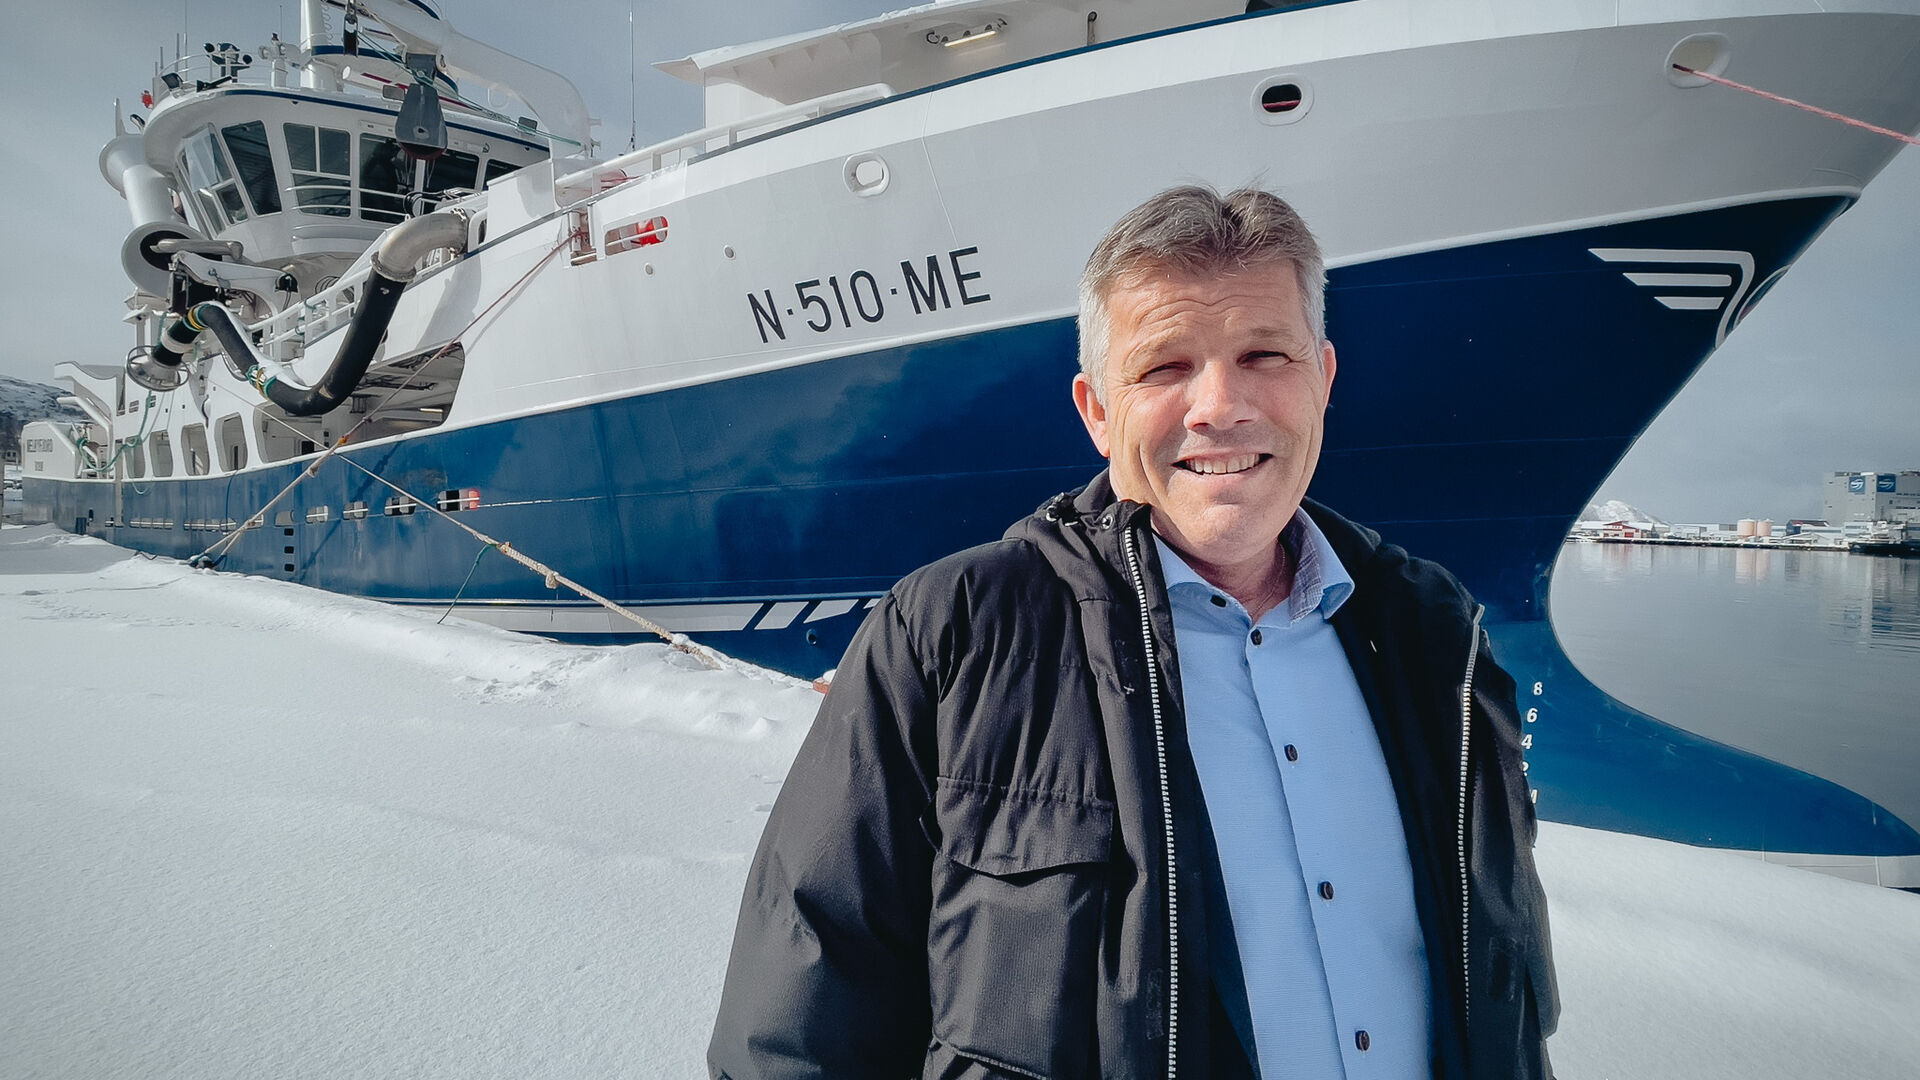 Bilde av fiskeri- og havminister Bjørnar Skjæran foran en fiskebåt